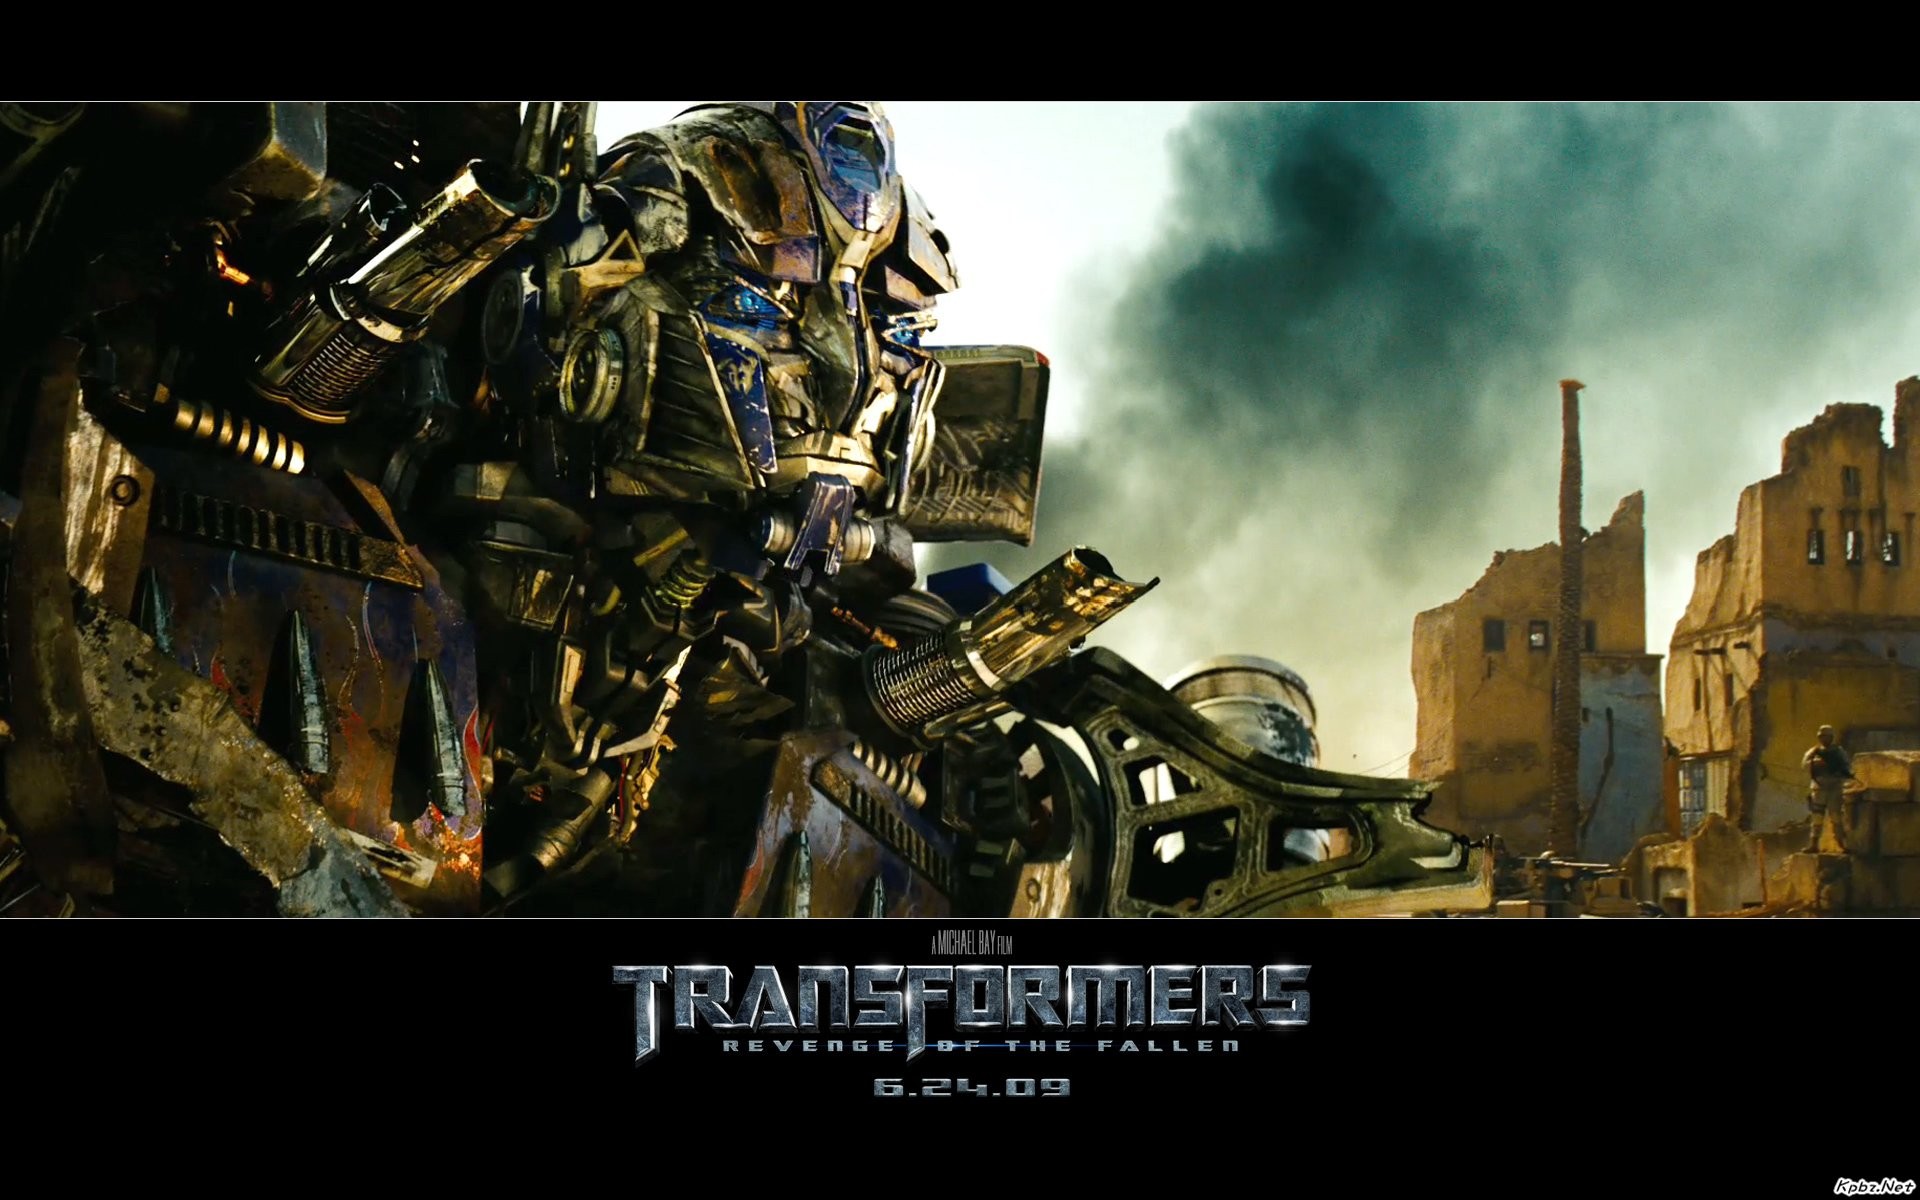 Transformers HD papel tapiz #12 - 1920x1200